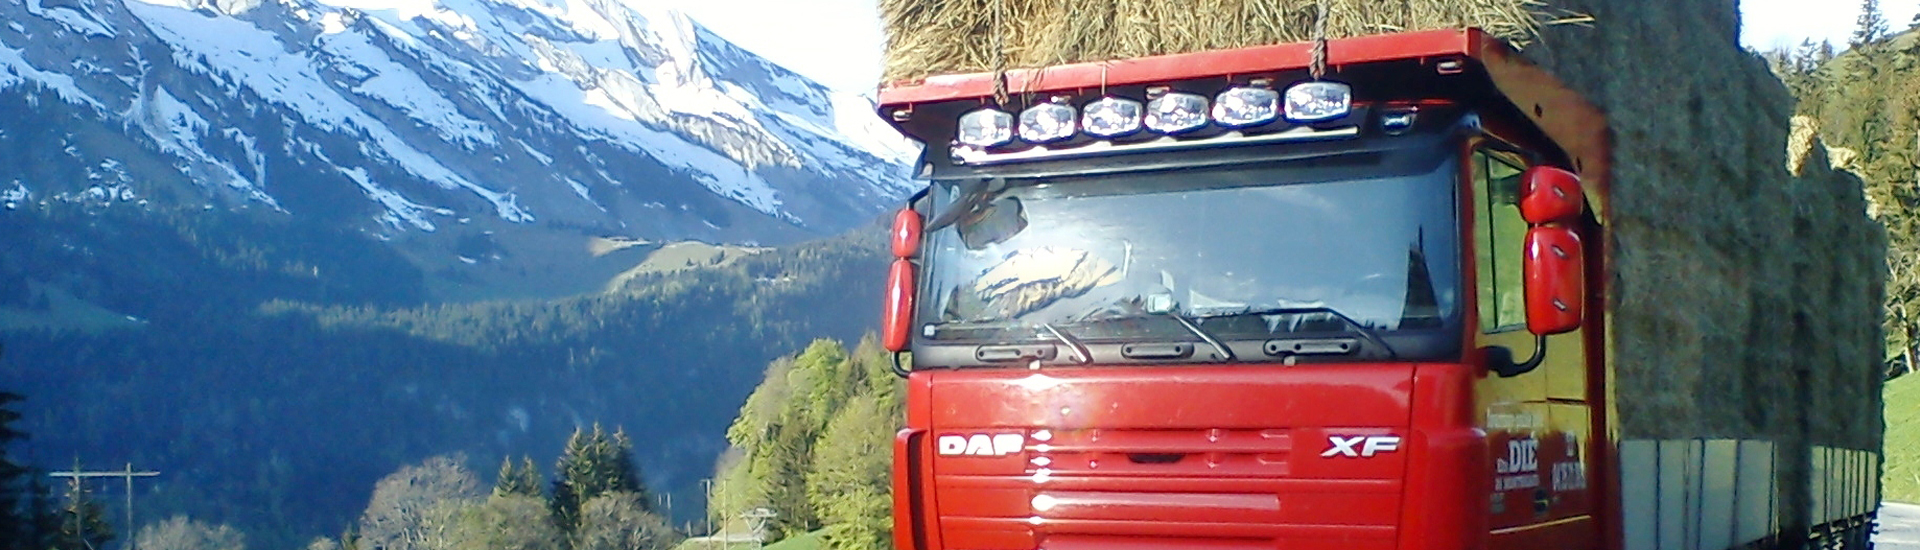 Transport de foin en haute montagne